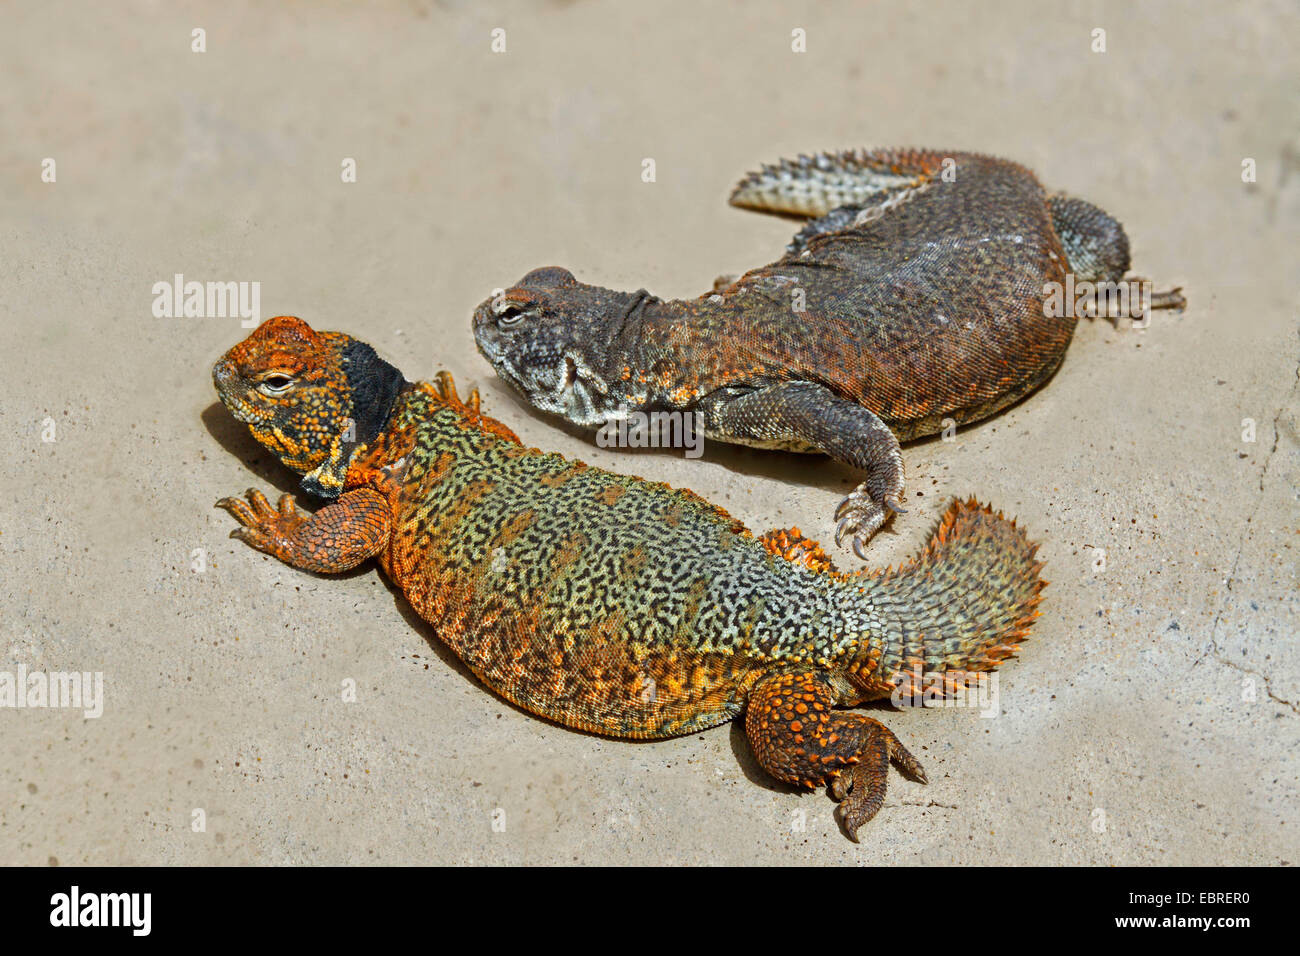 Egyptian spiny-tailed lizard, Egyptian mastigure, dabb lizard (Uromastyx aegyptia), two Egyptian spiny-tailed lizard on sandy ground Stock Photo